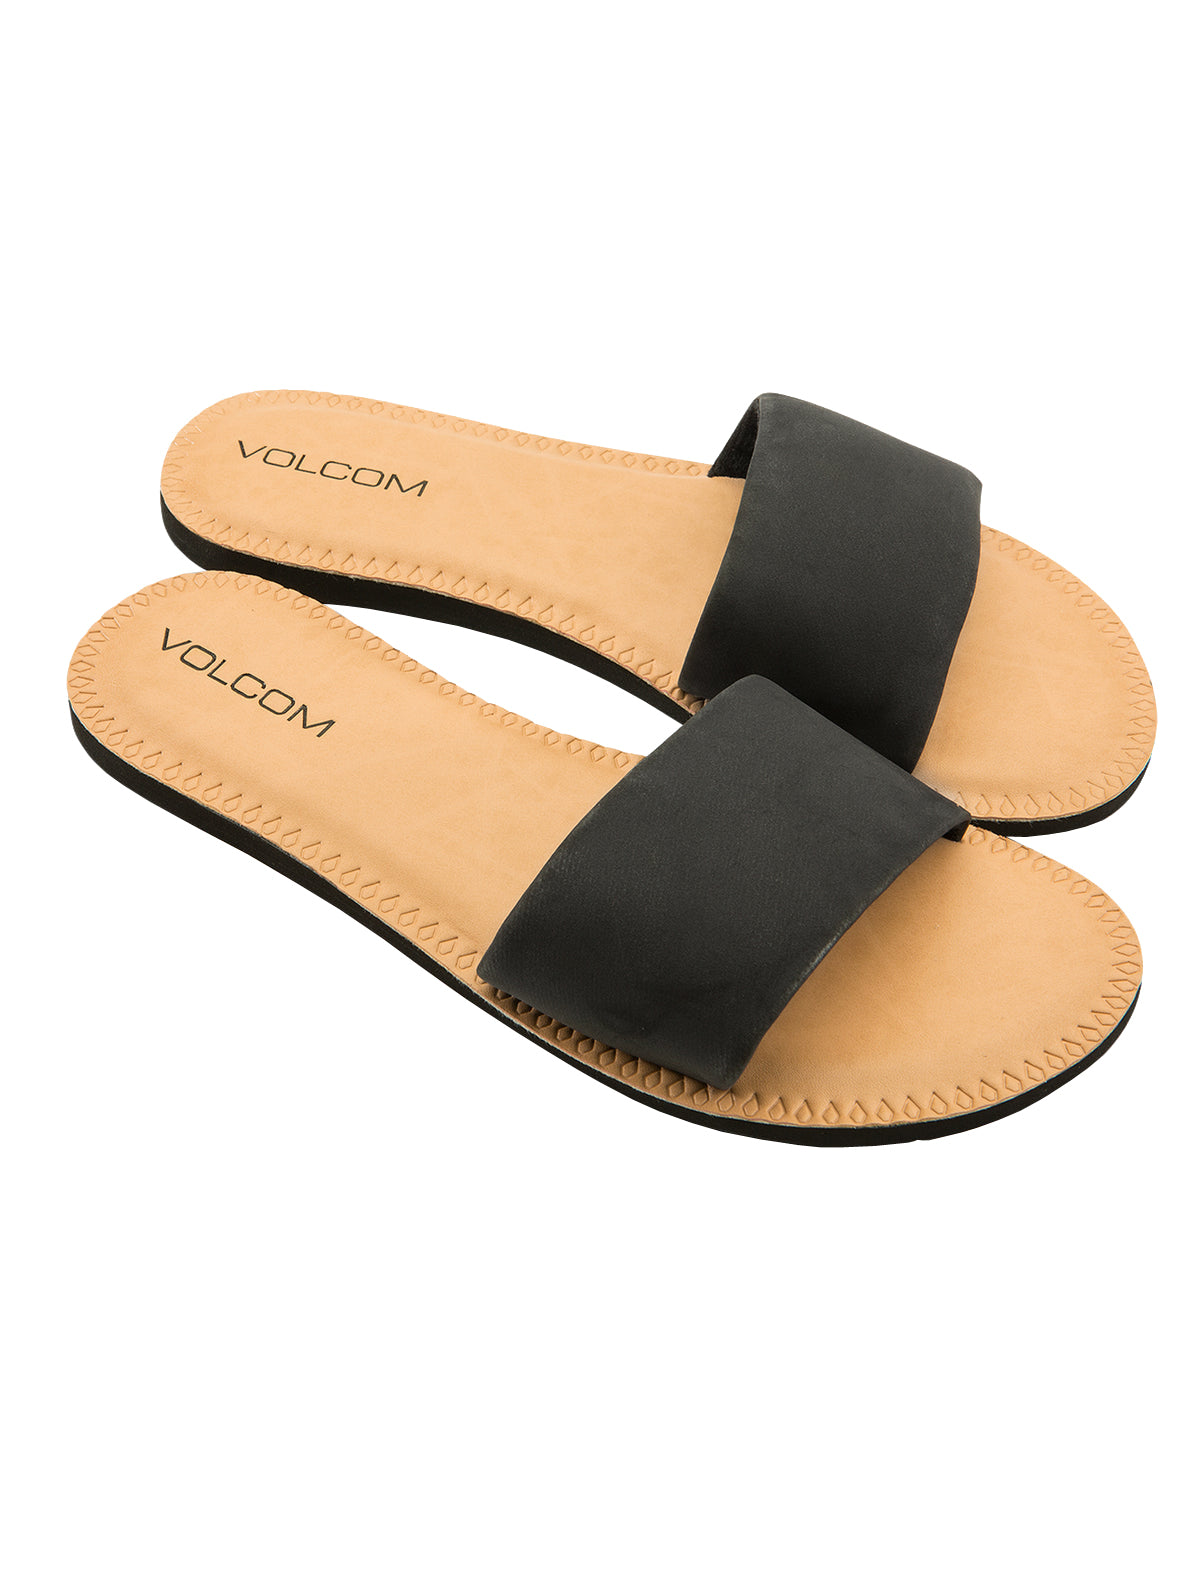 Volcom Simple Slide Womens Sandal BLK-Black 5